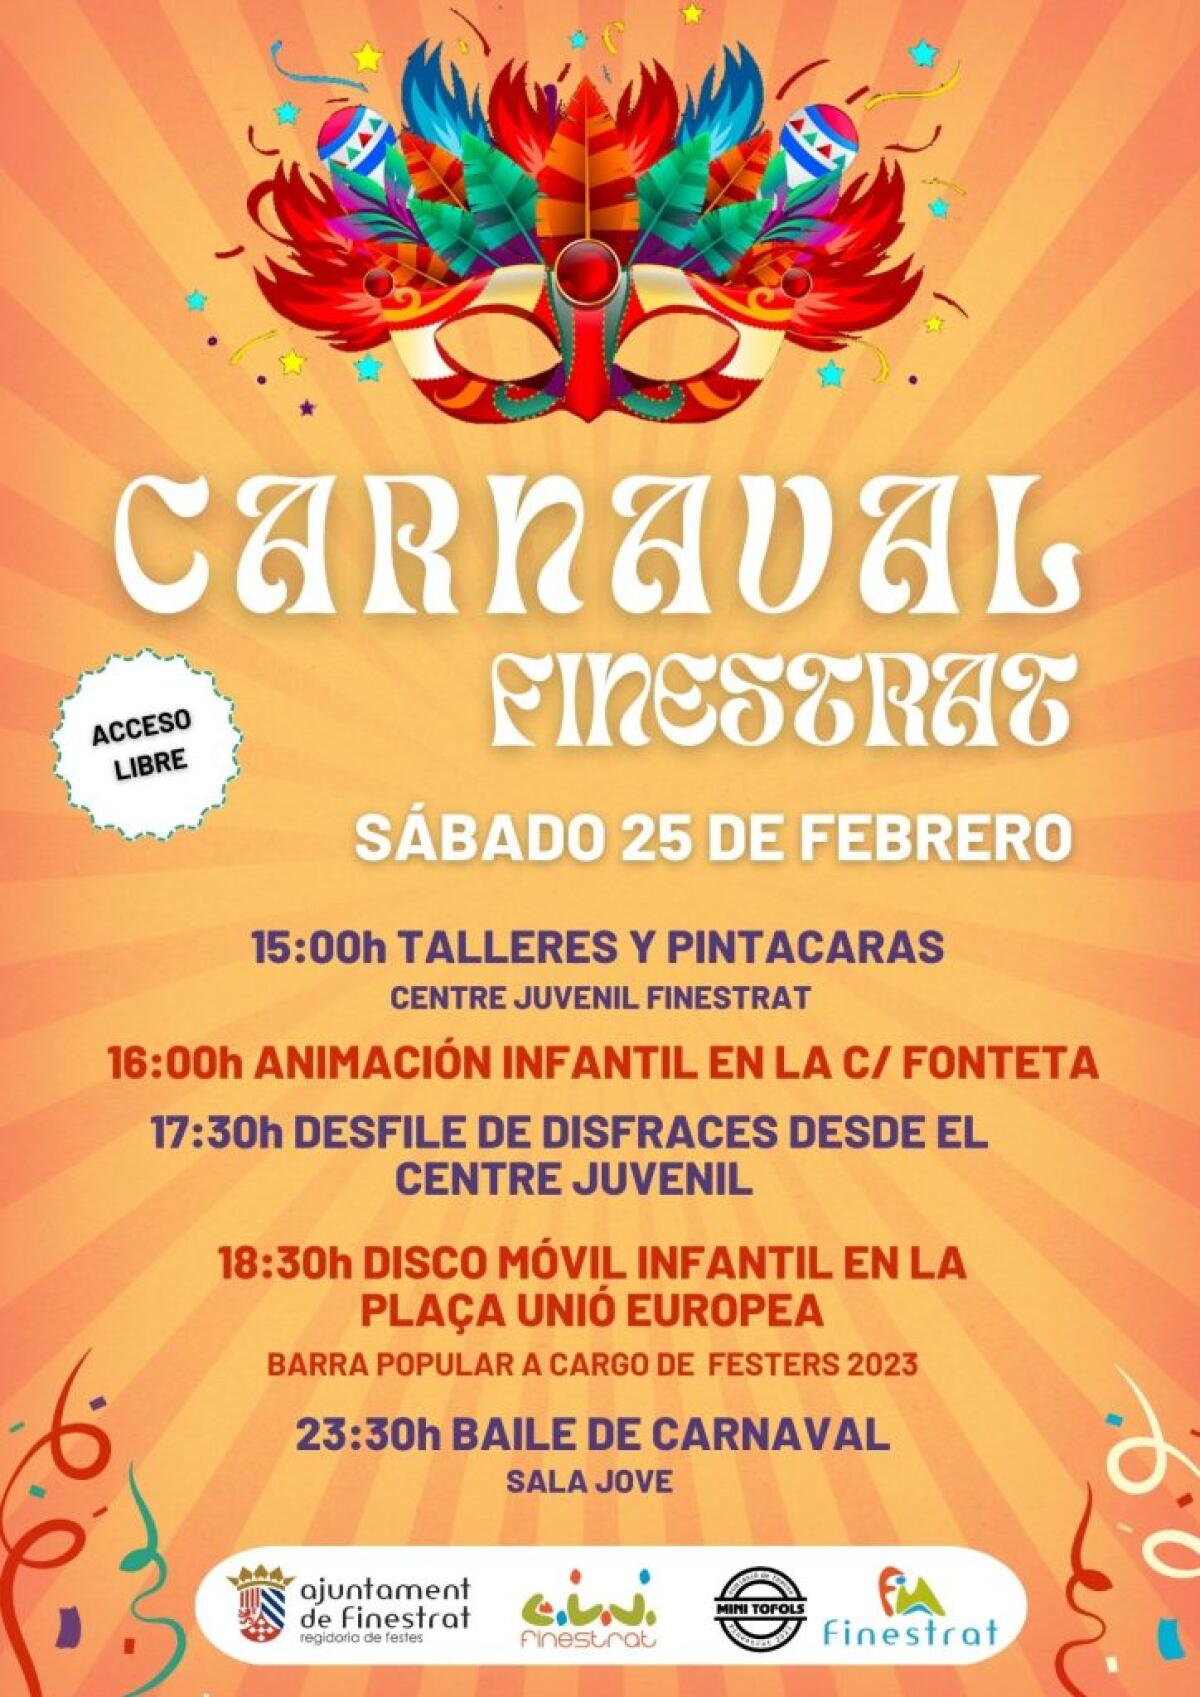 Agenda de cultura gratuita comarcal del 20 al 26 de febrero